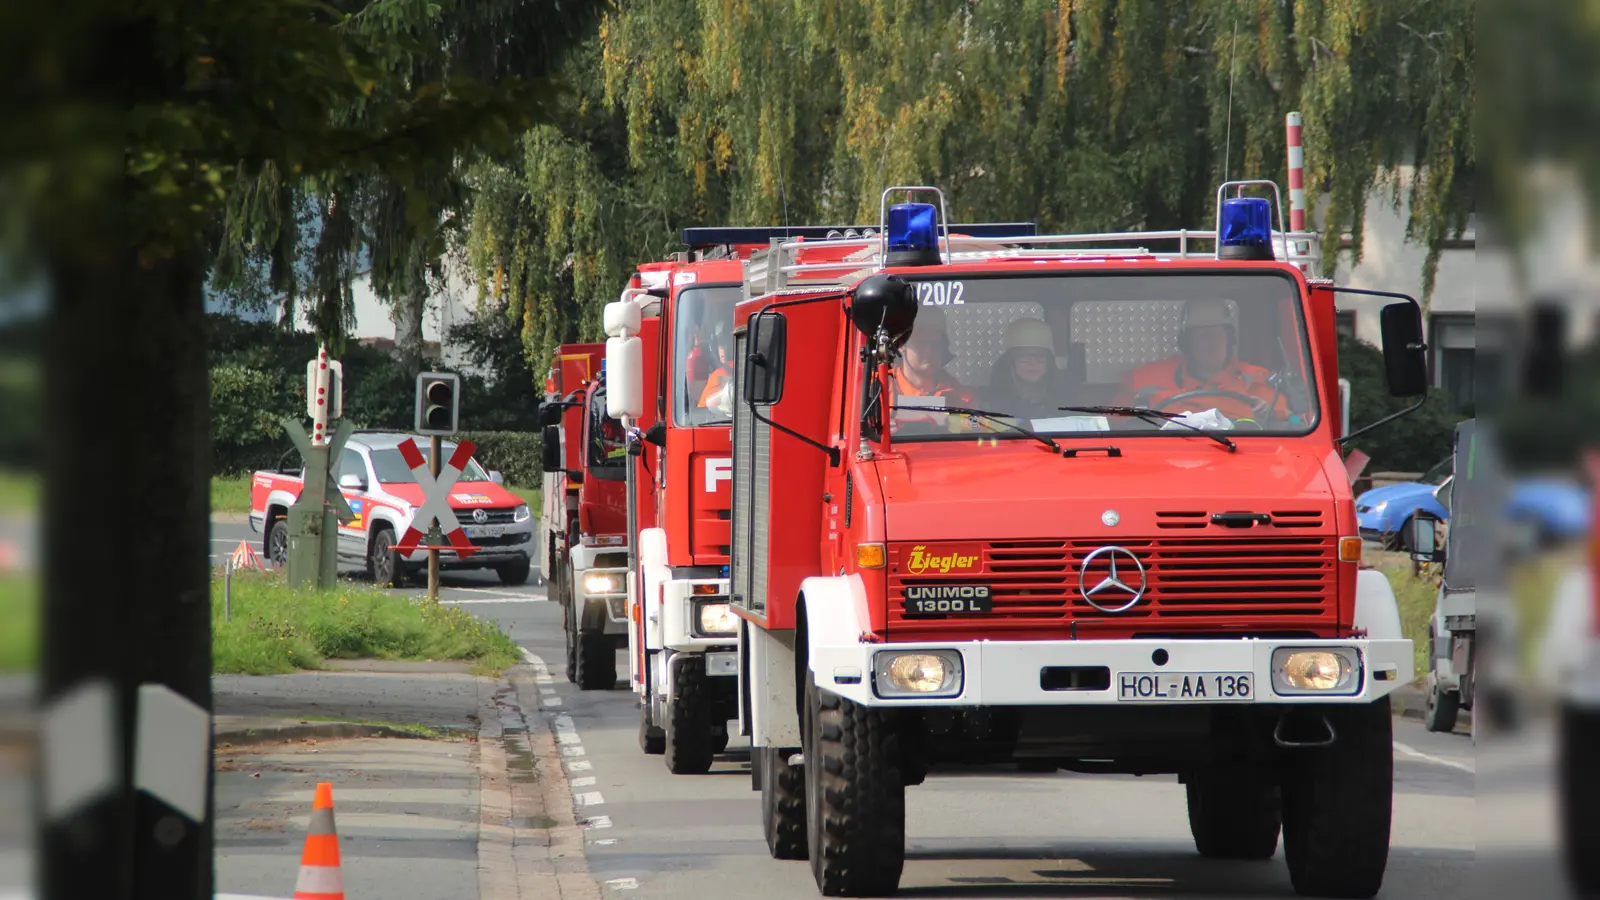 20 Einsatzkräfte aus dem Landkreis Holzminden rücken zur Unterstützung eines Waldbrandes in die Sächsische Schweiz aus. (Foto: privat)